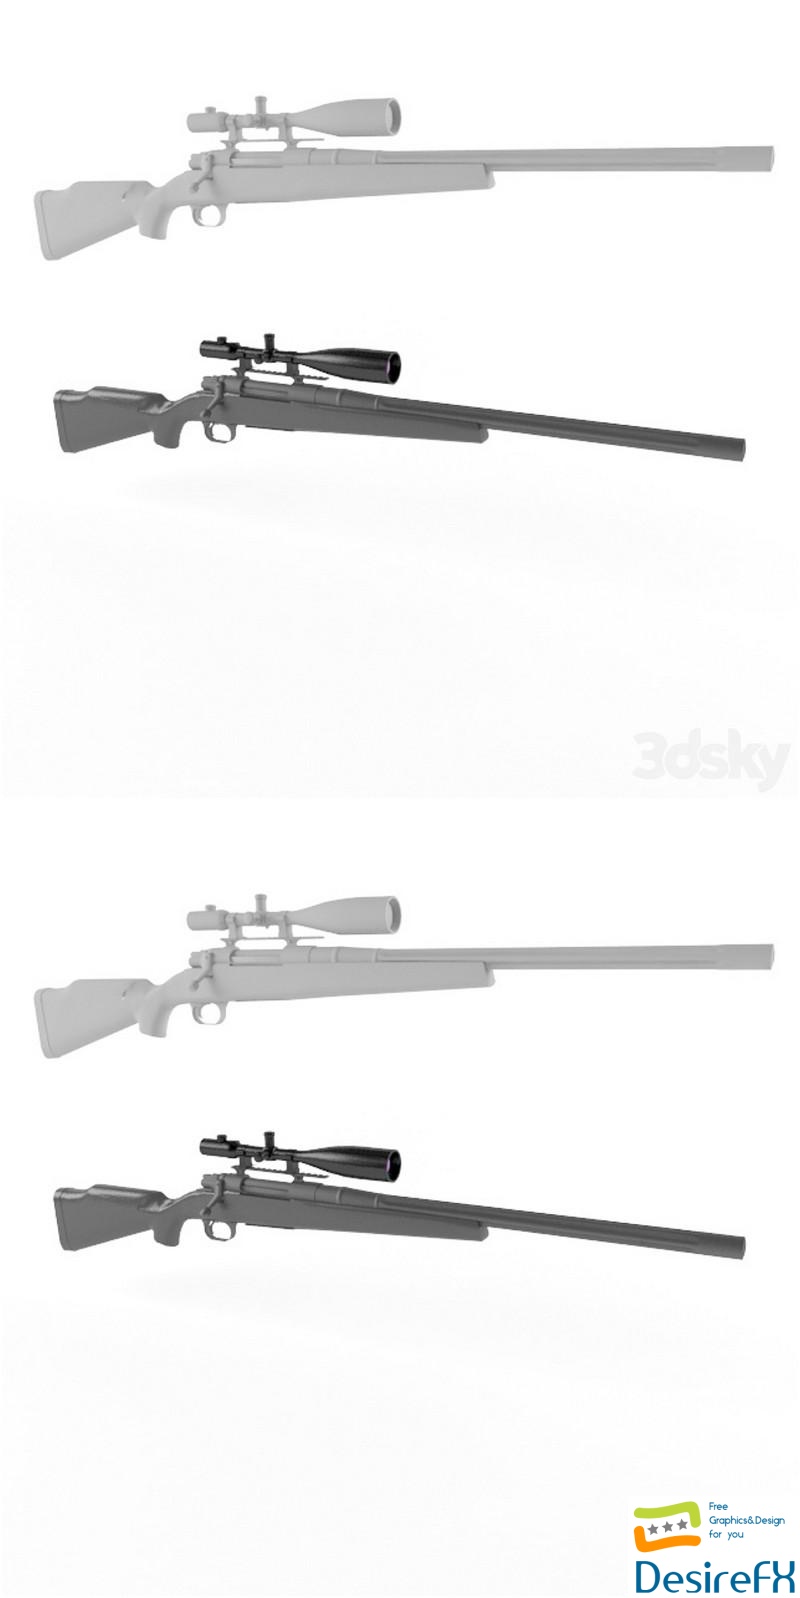 Sniper rifle 3D Model